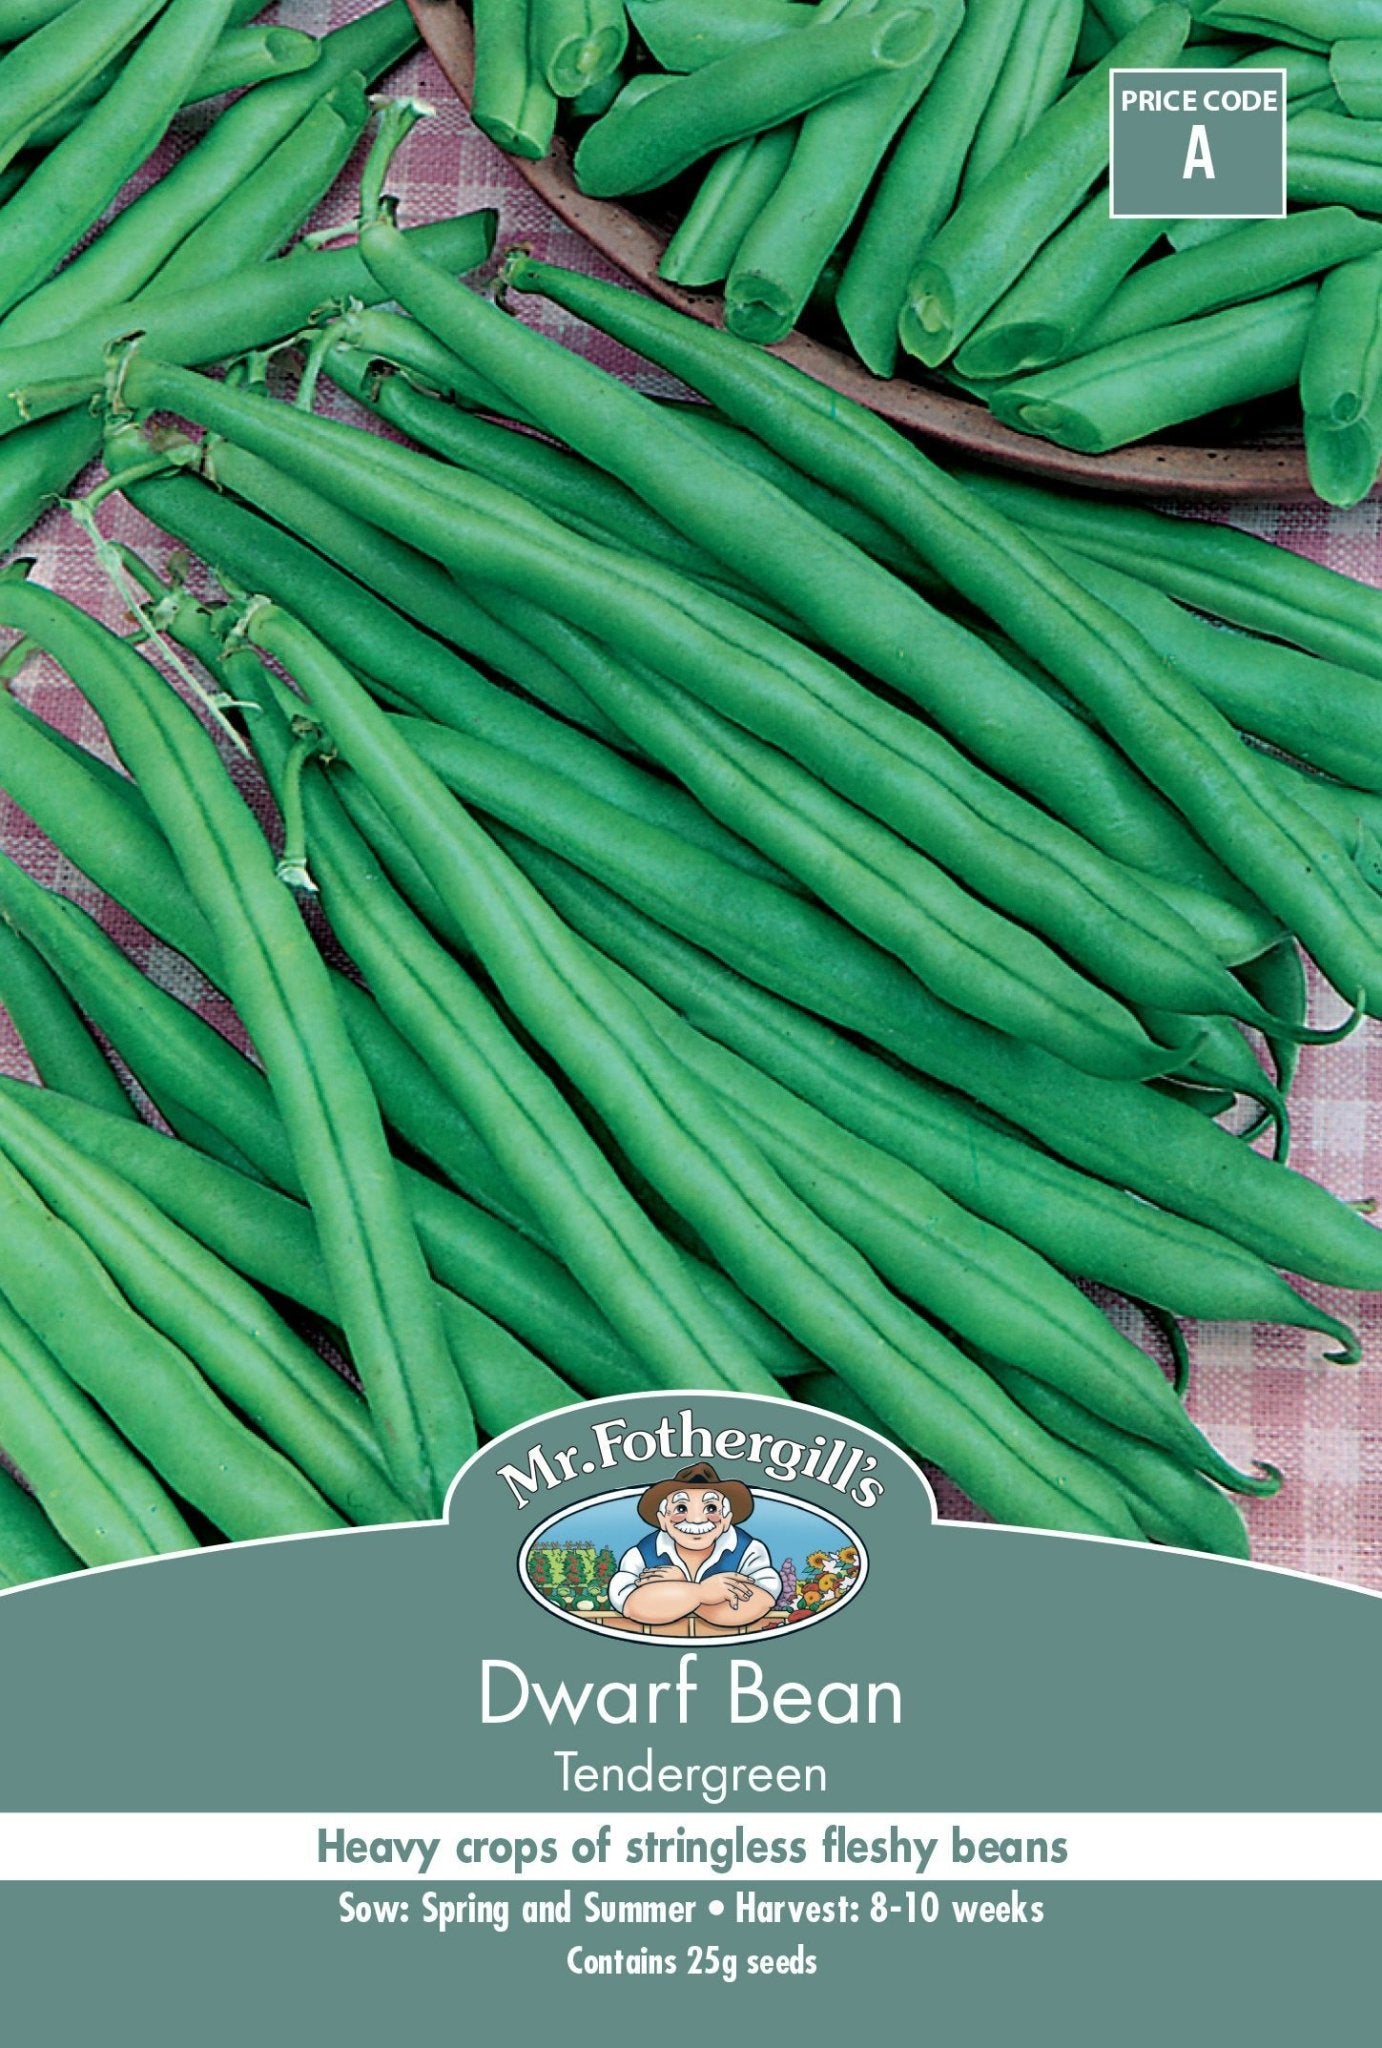 Mr Fothergills Dwarf Bean Tendergreen - Woonona Petfood & Produce